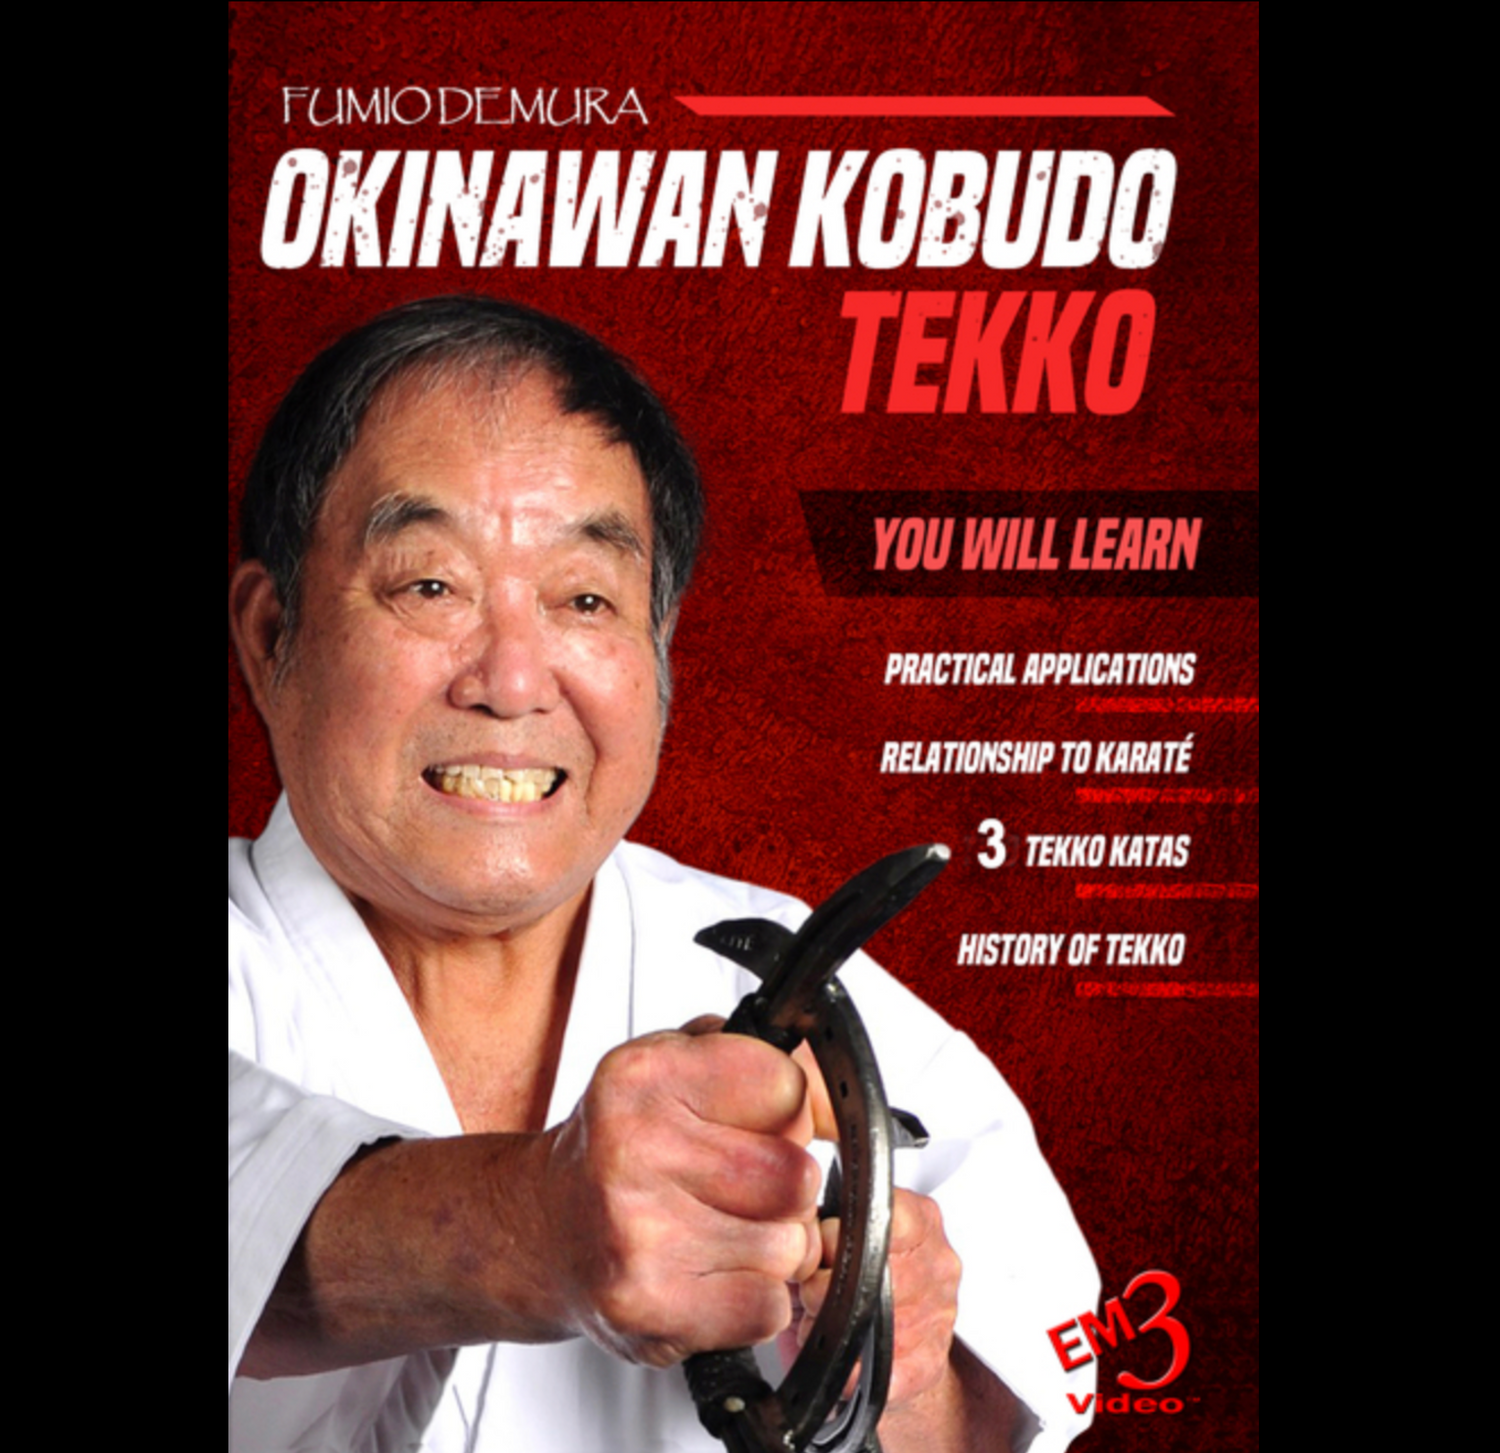 Kobudo de Okinawa: Tekko de Fumio Demura (bajo demanda)